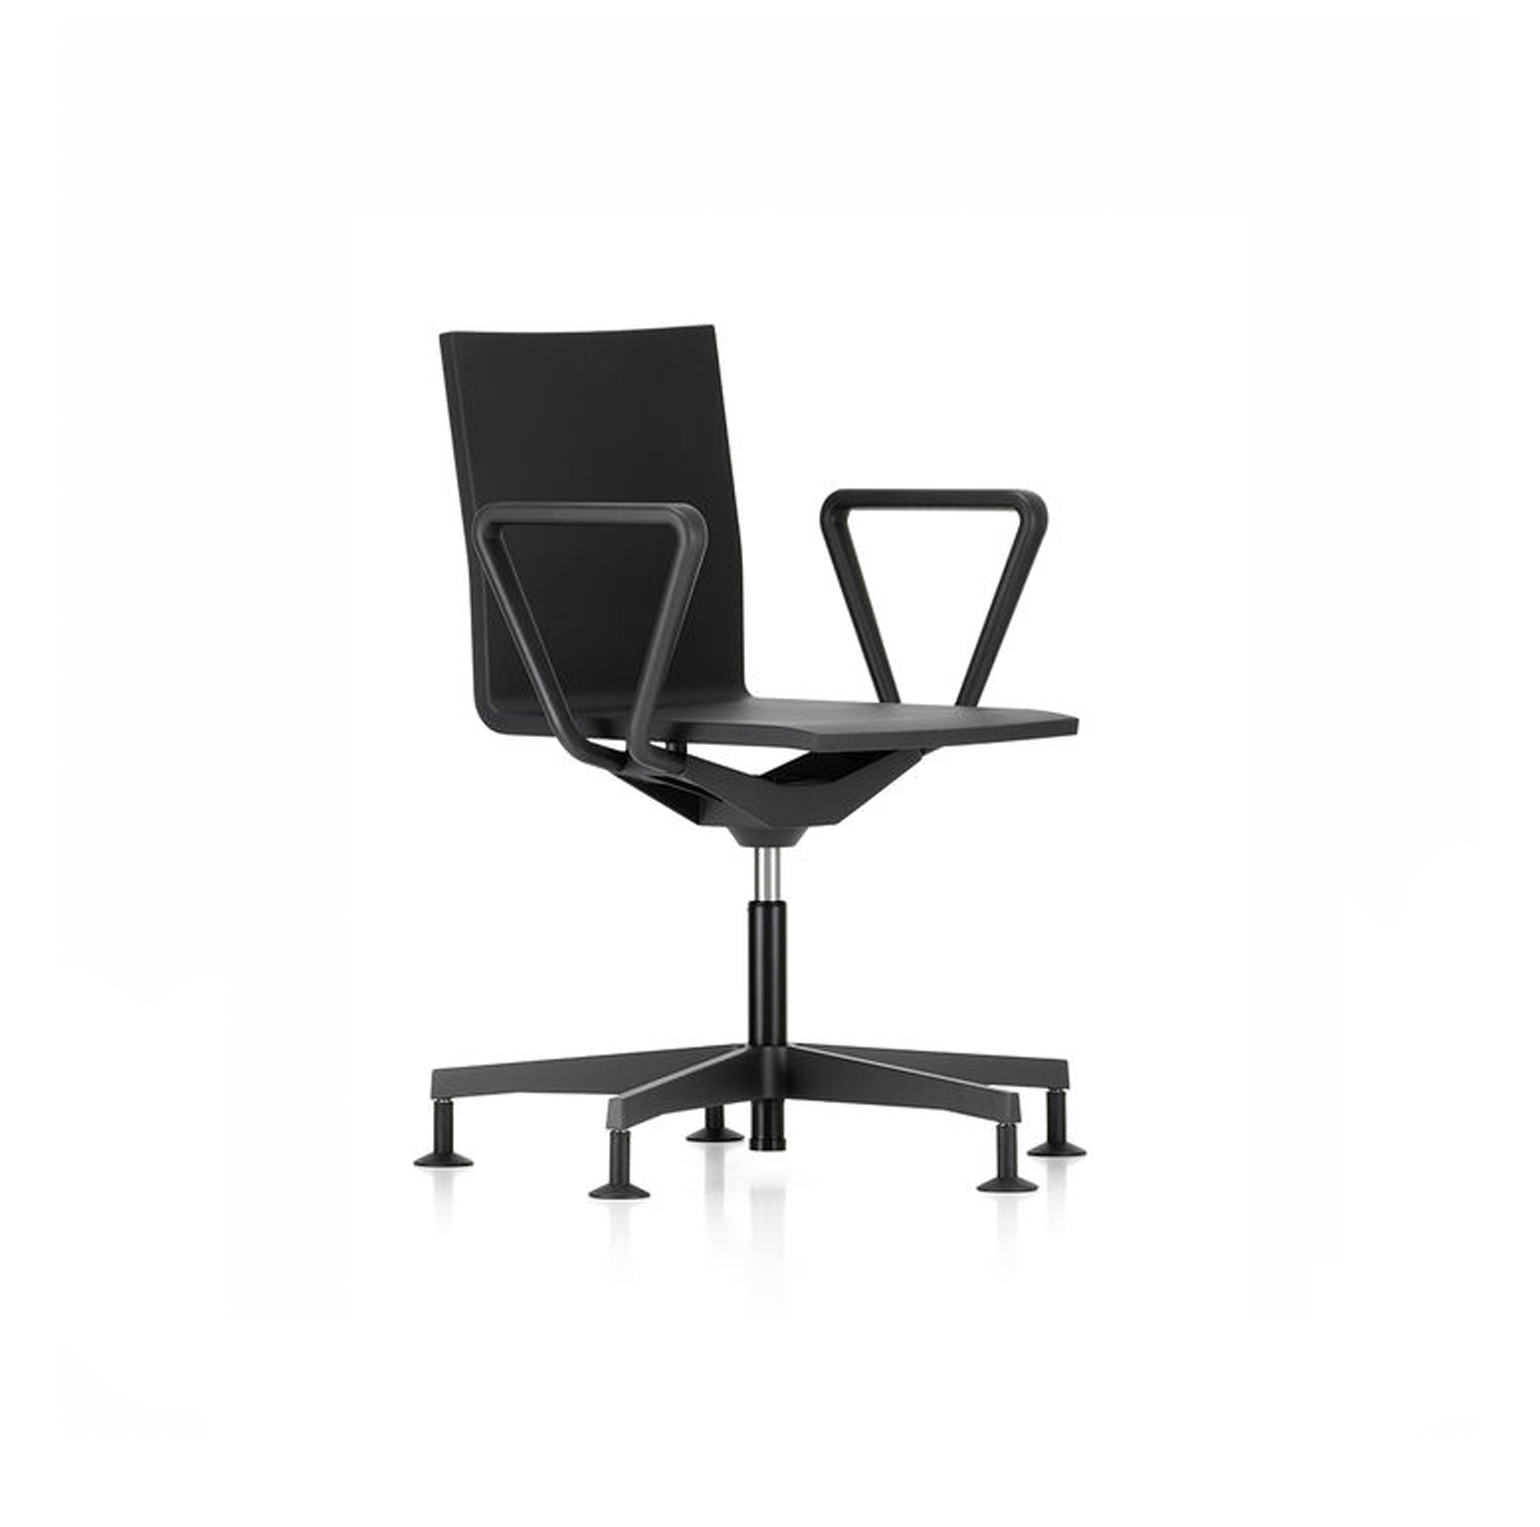 04 Chair, by Maarten Van Severen - Vitra | Matisse - Interior